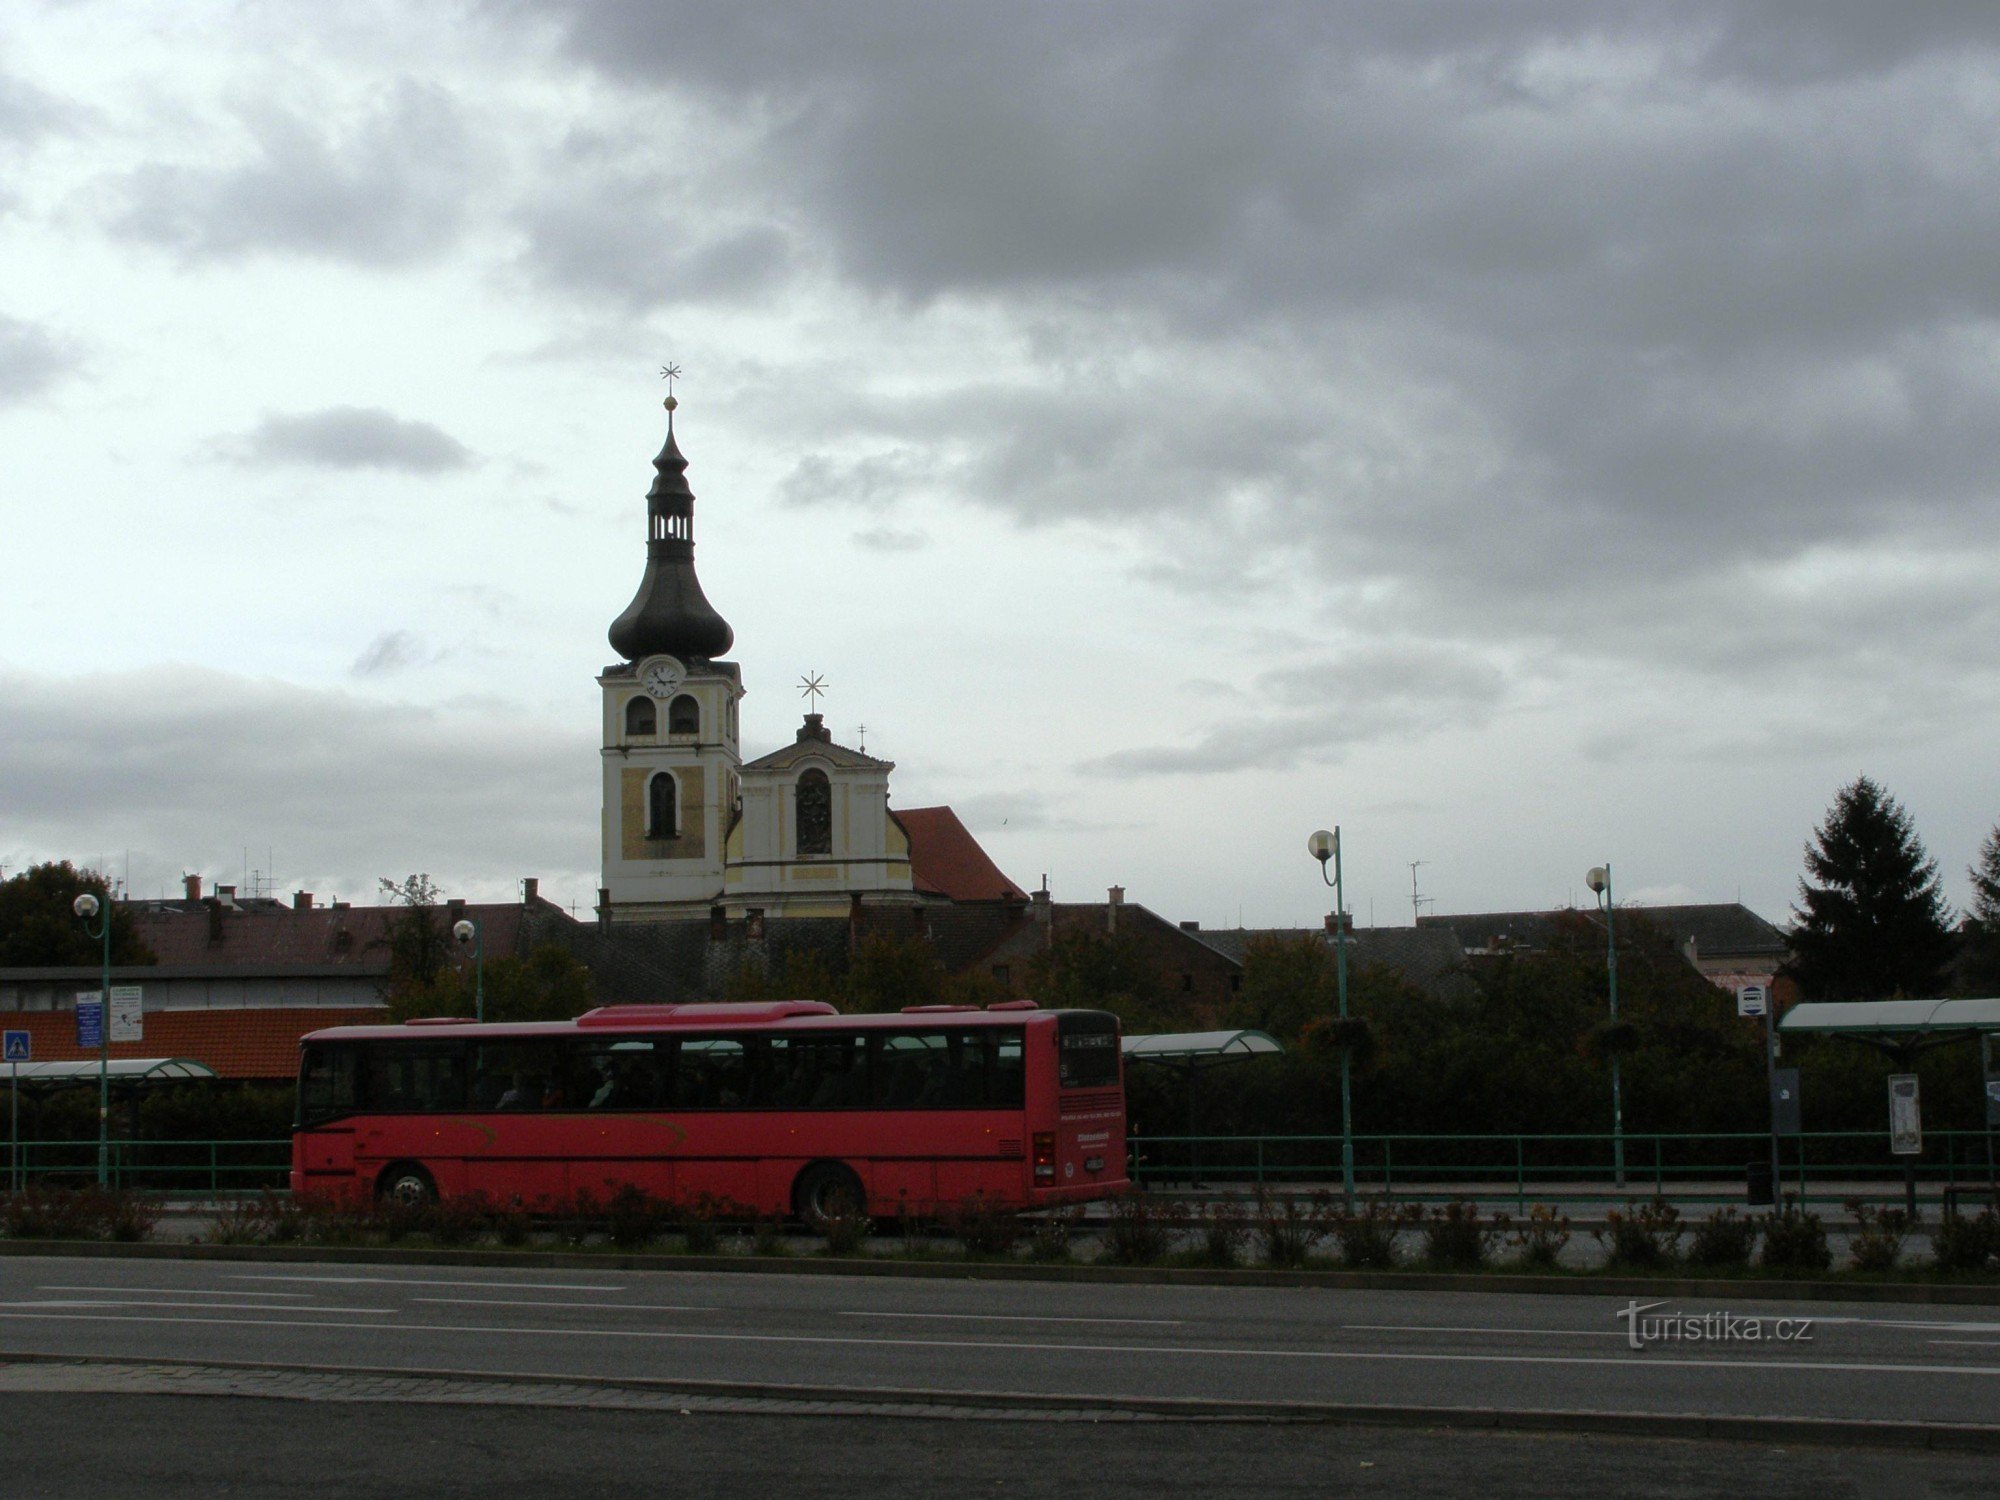 Hořice - busstation